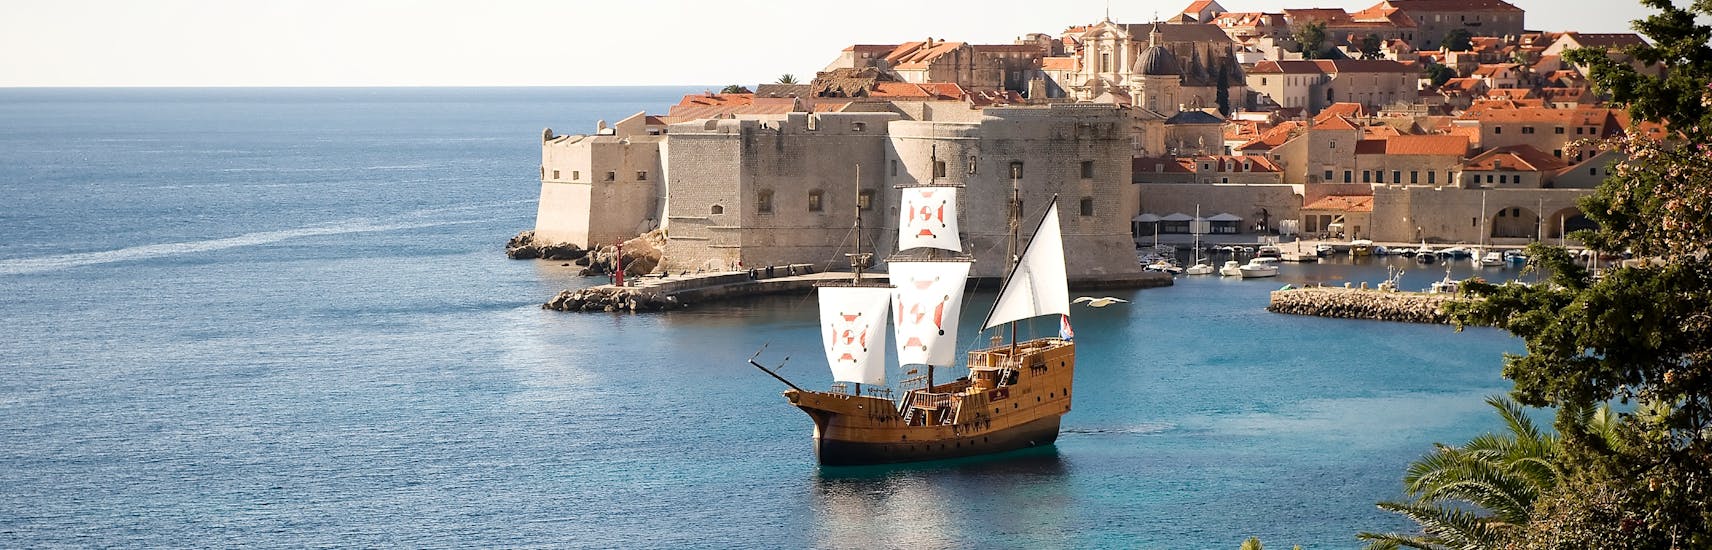 De traditionele Karaka boot op het water voor de zonsondergang met Karaka Dubrovnik.